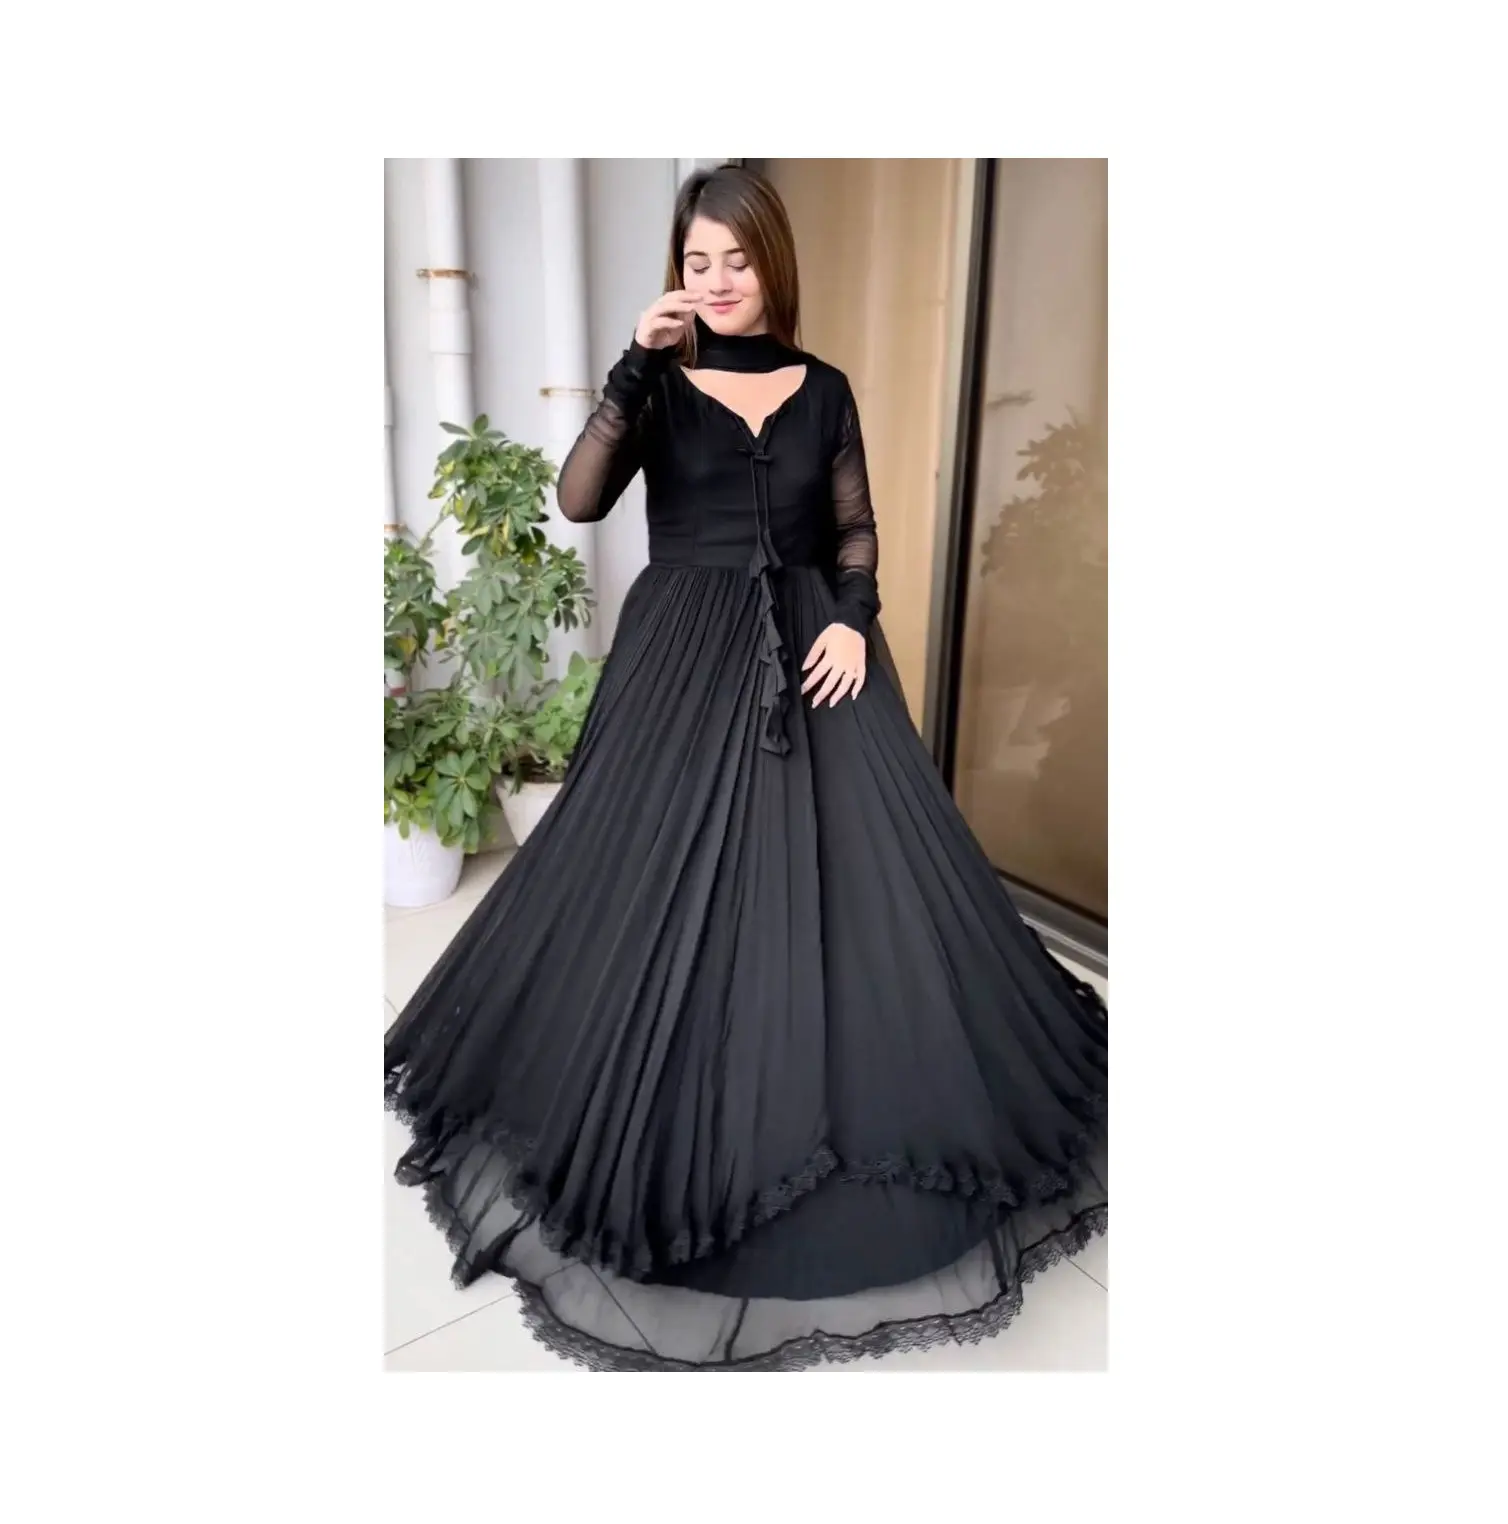 Giá bán số lượng lớn Womens dài Gown Maxi Dress với dupatta từ Ấn Độ xuất khẩu và nhà sản xuất để bán